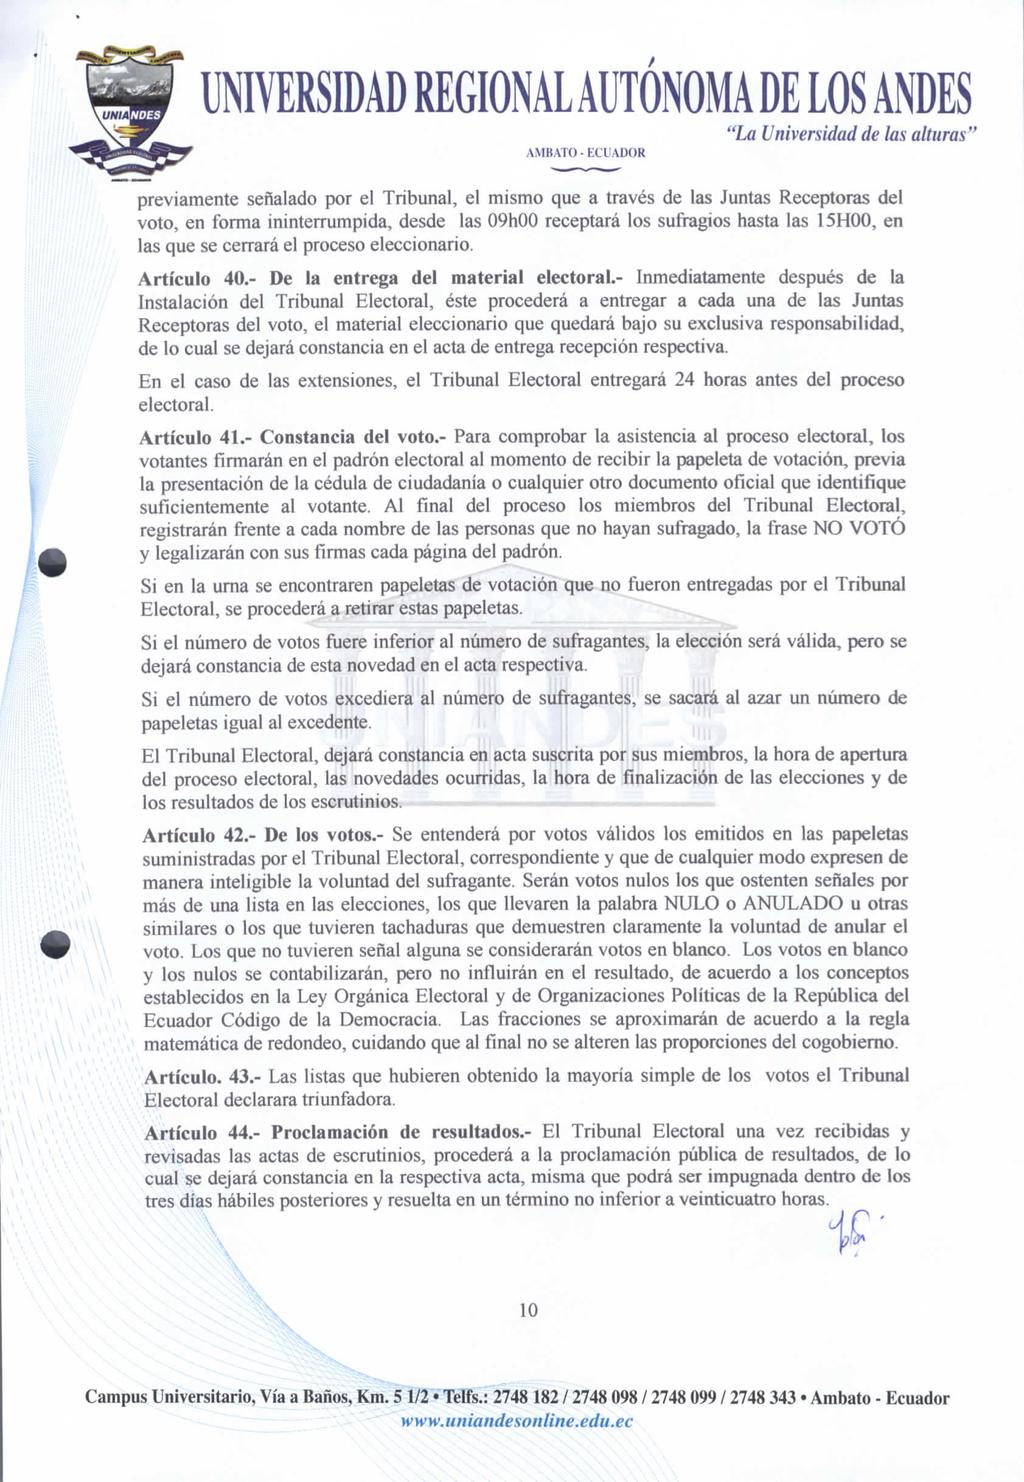 AMBATO- ECUADOR "La Universidad de las alturas" previamente señalado por el Tribunal, el mismo que a través de las Juntas Receptoras del voto, en forma ininterrumpida, desde las 09hOO receptará los